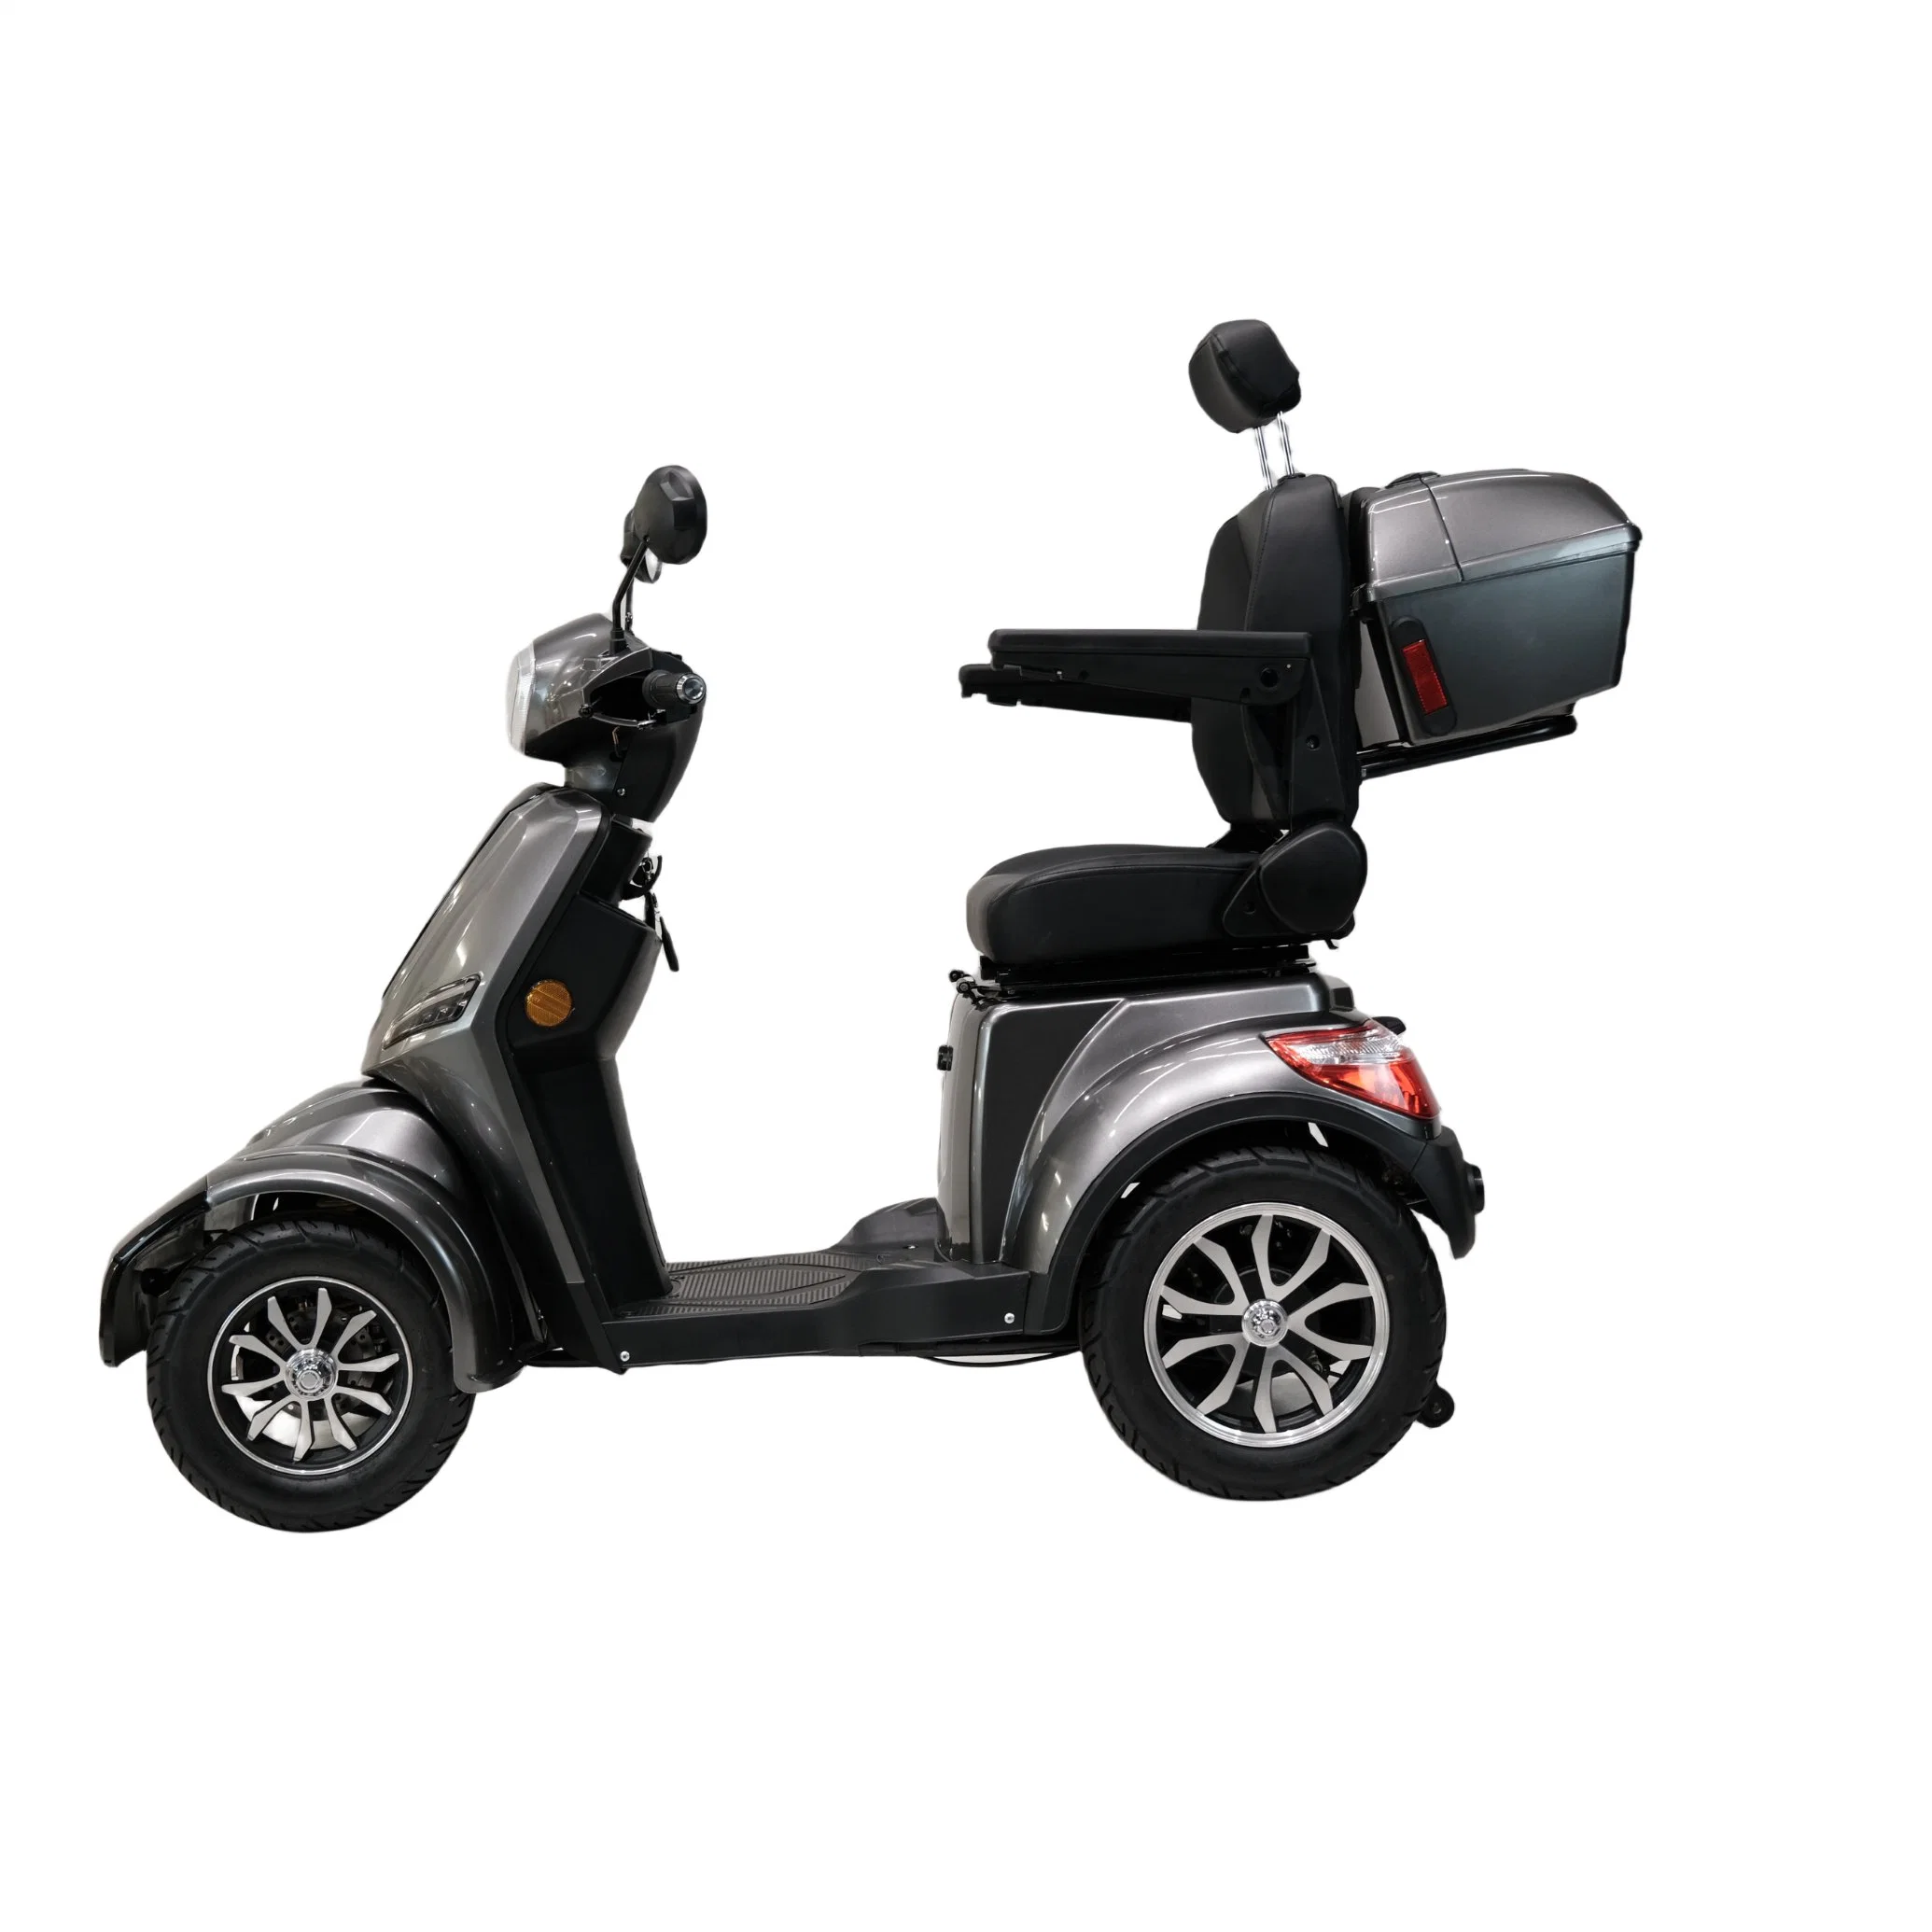 Venta en caliente 4 Wheel City Mobility Vehicle con mejor Precio Movilidad portátil discapacidad eléctrica scooter conveniente para el anciano